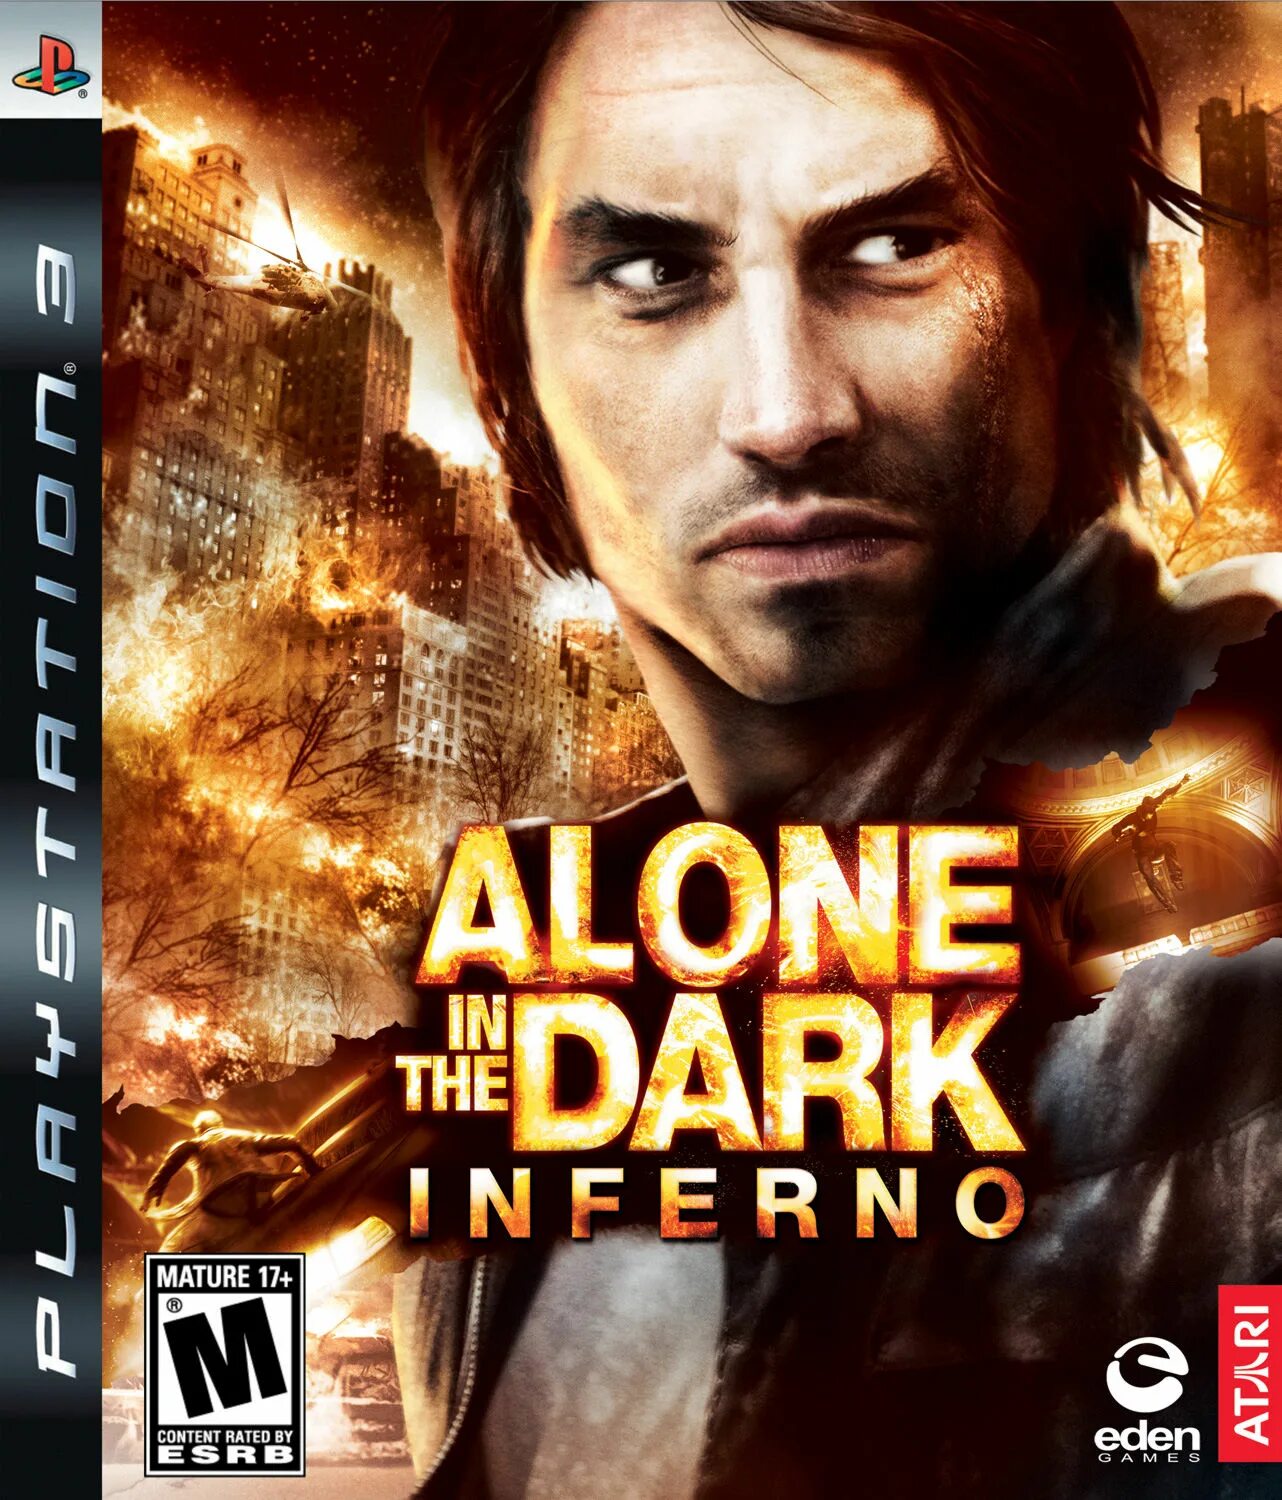 Alone in the Dark (Xbox 360). Alone in the Dark 2008 ps3. Alone in the Dark Inferno ps3. Alone in the Dark игра 2008 ps3.